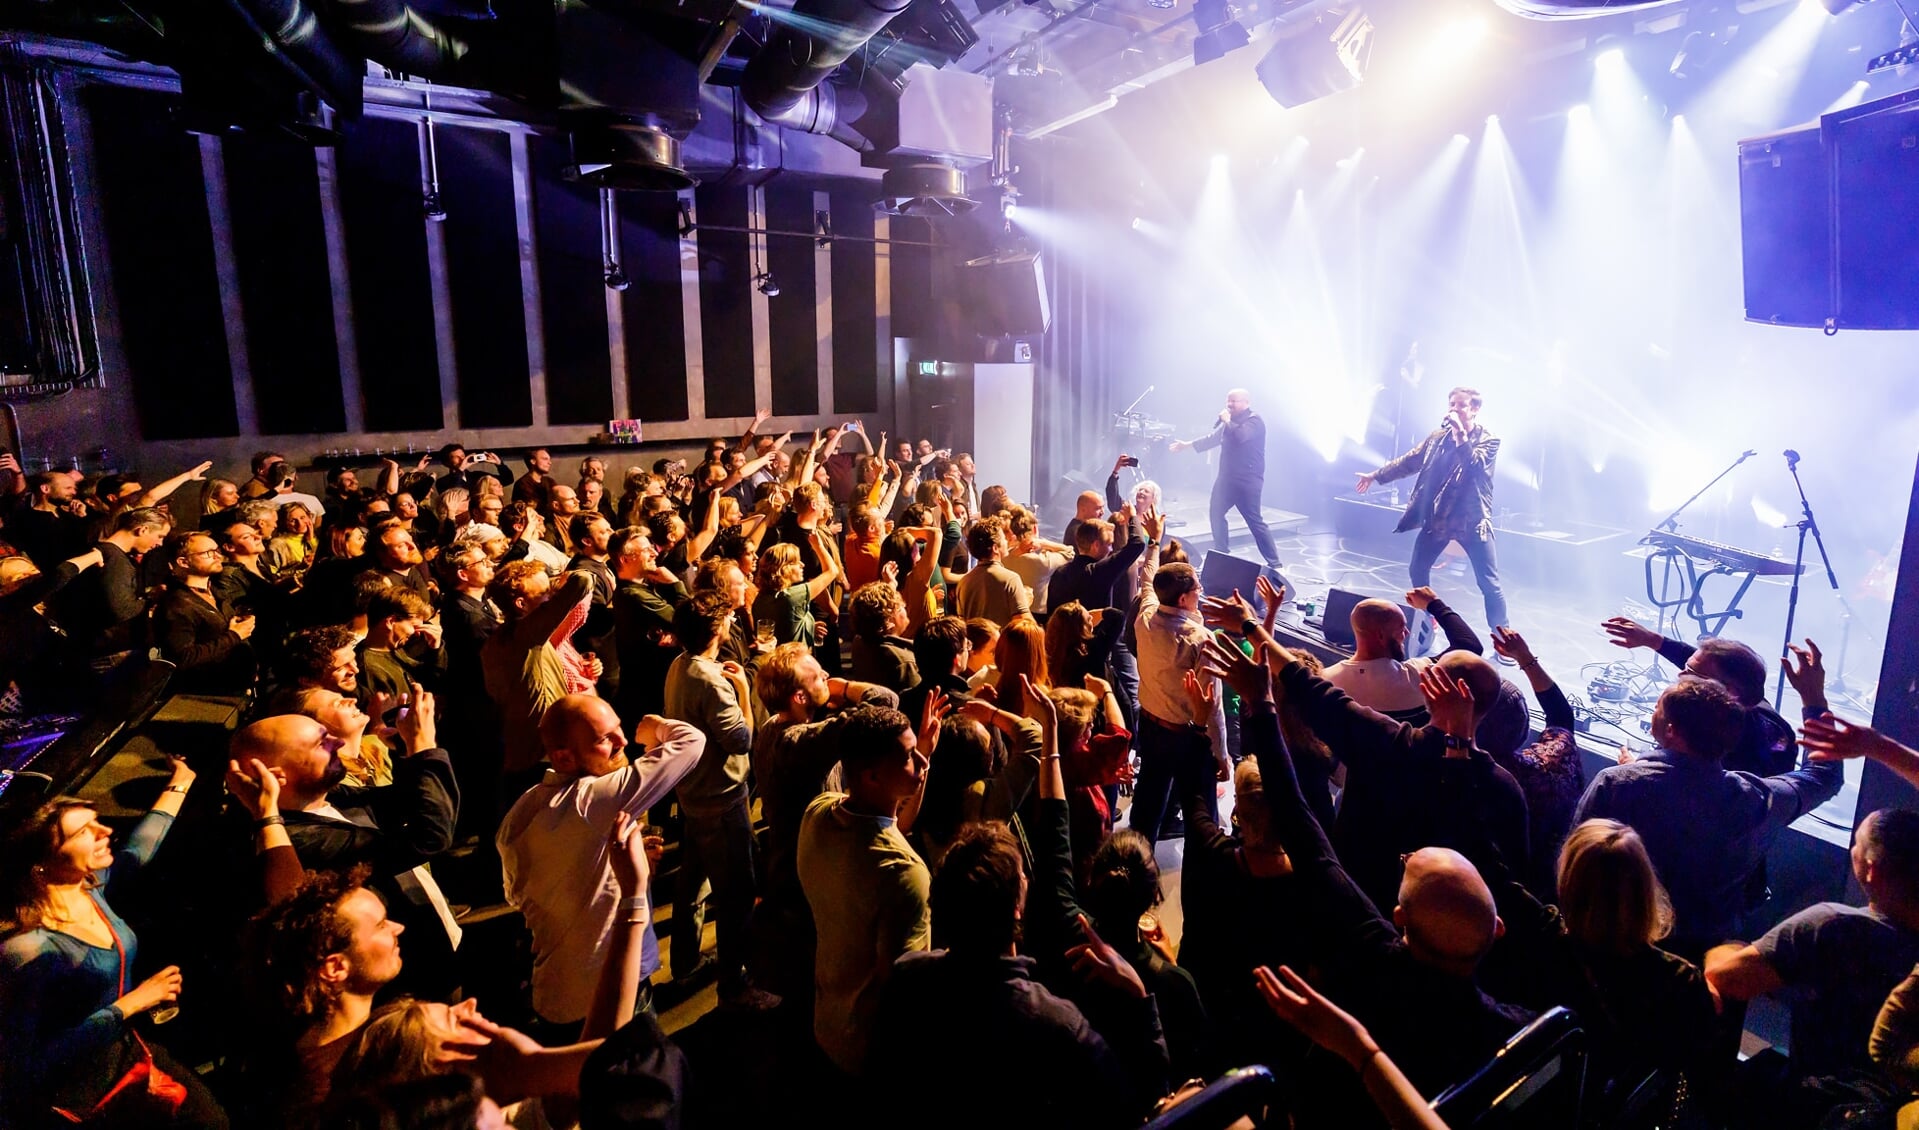 IMBOS speelt Nederlandse pop. Stemt het publiek 15 april deze band naar het podium van Westerpop?